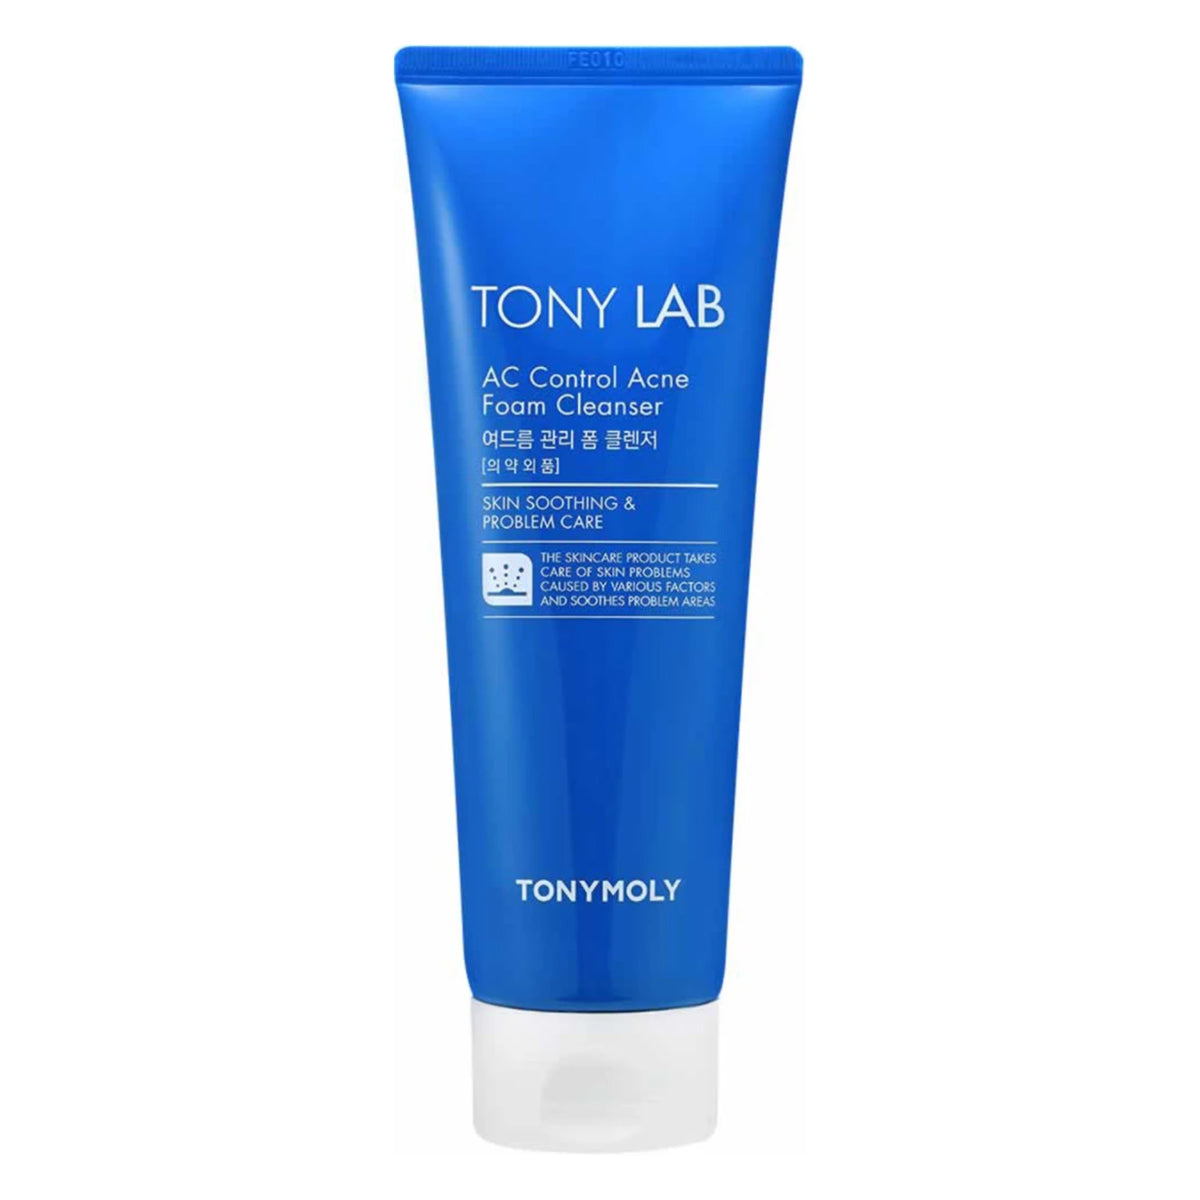 Tonymoly - Tony Lab AC Control Acne Foam Cleanser - 150 ml